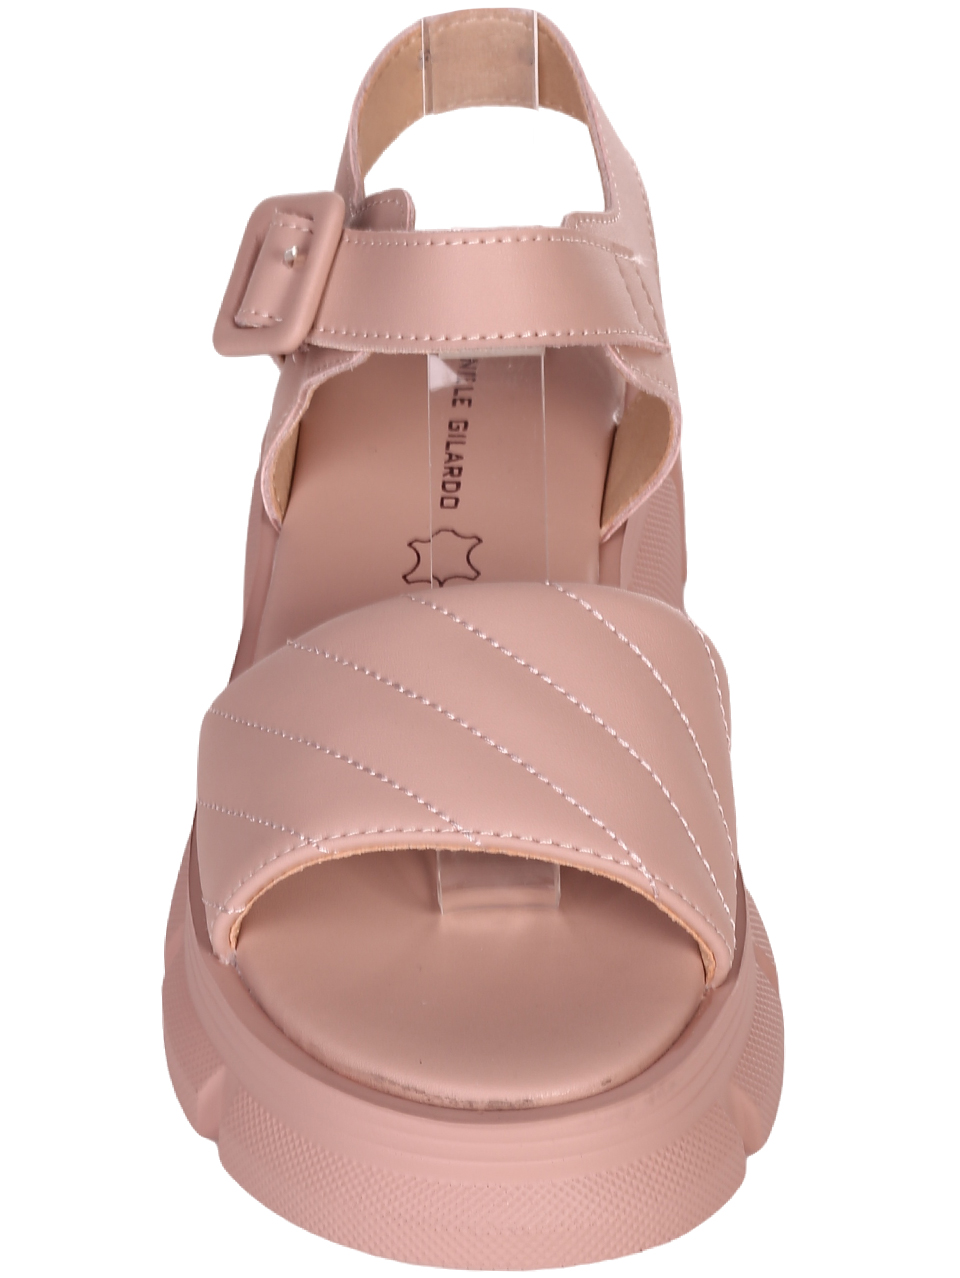 Ежедневни дамски сандали от естествена кожа в розово 4AF-23200 pink